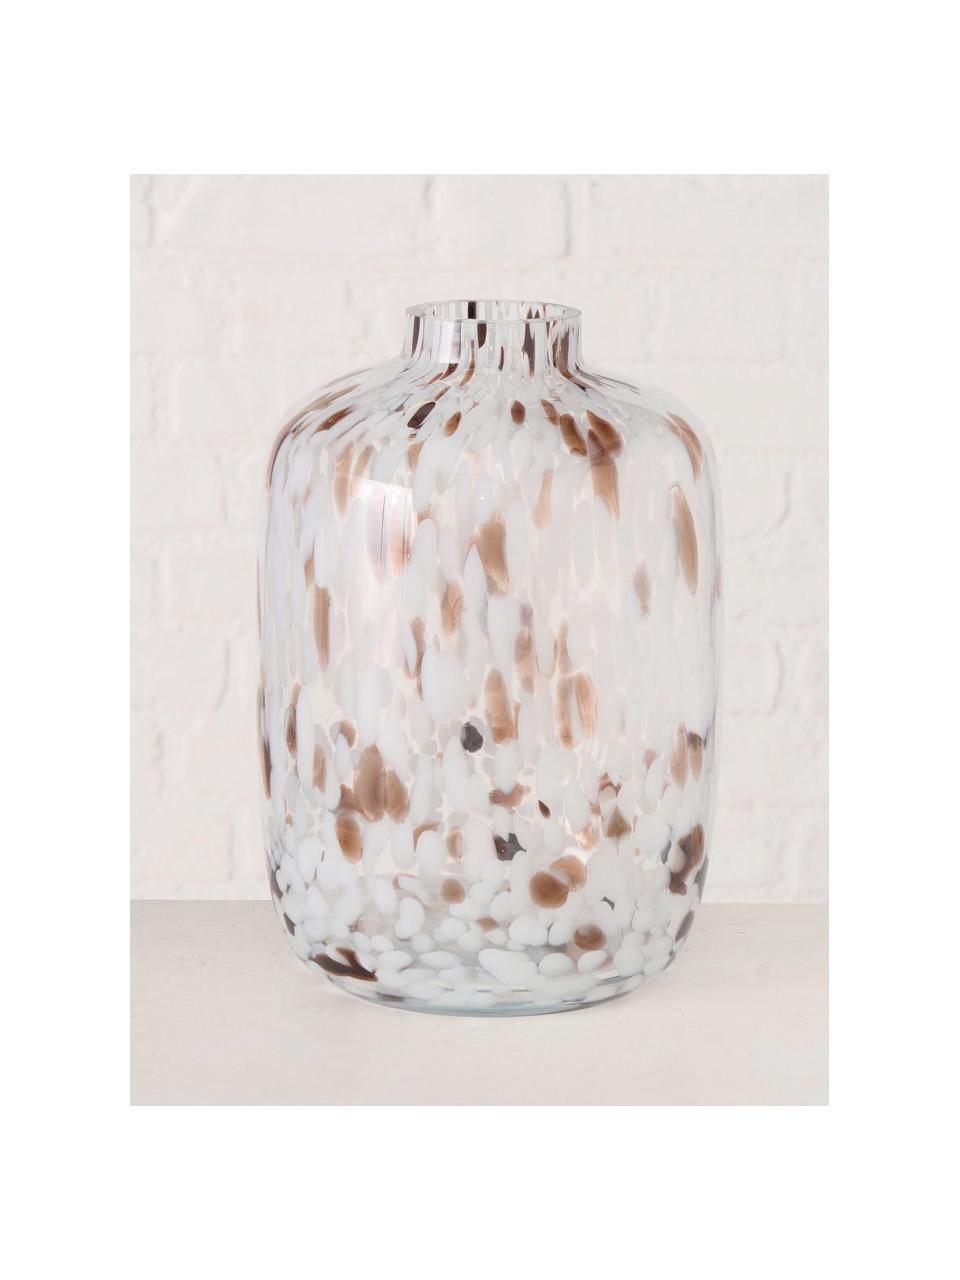 Velká skleněná váza Lulea, V 26 cm, Sklo, Bílá, odstíny hnědé, Ø 18 cm, V 26 cm